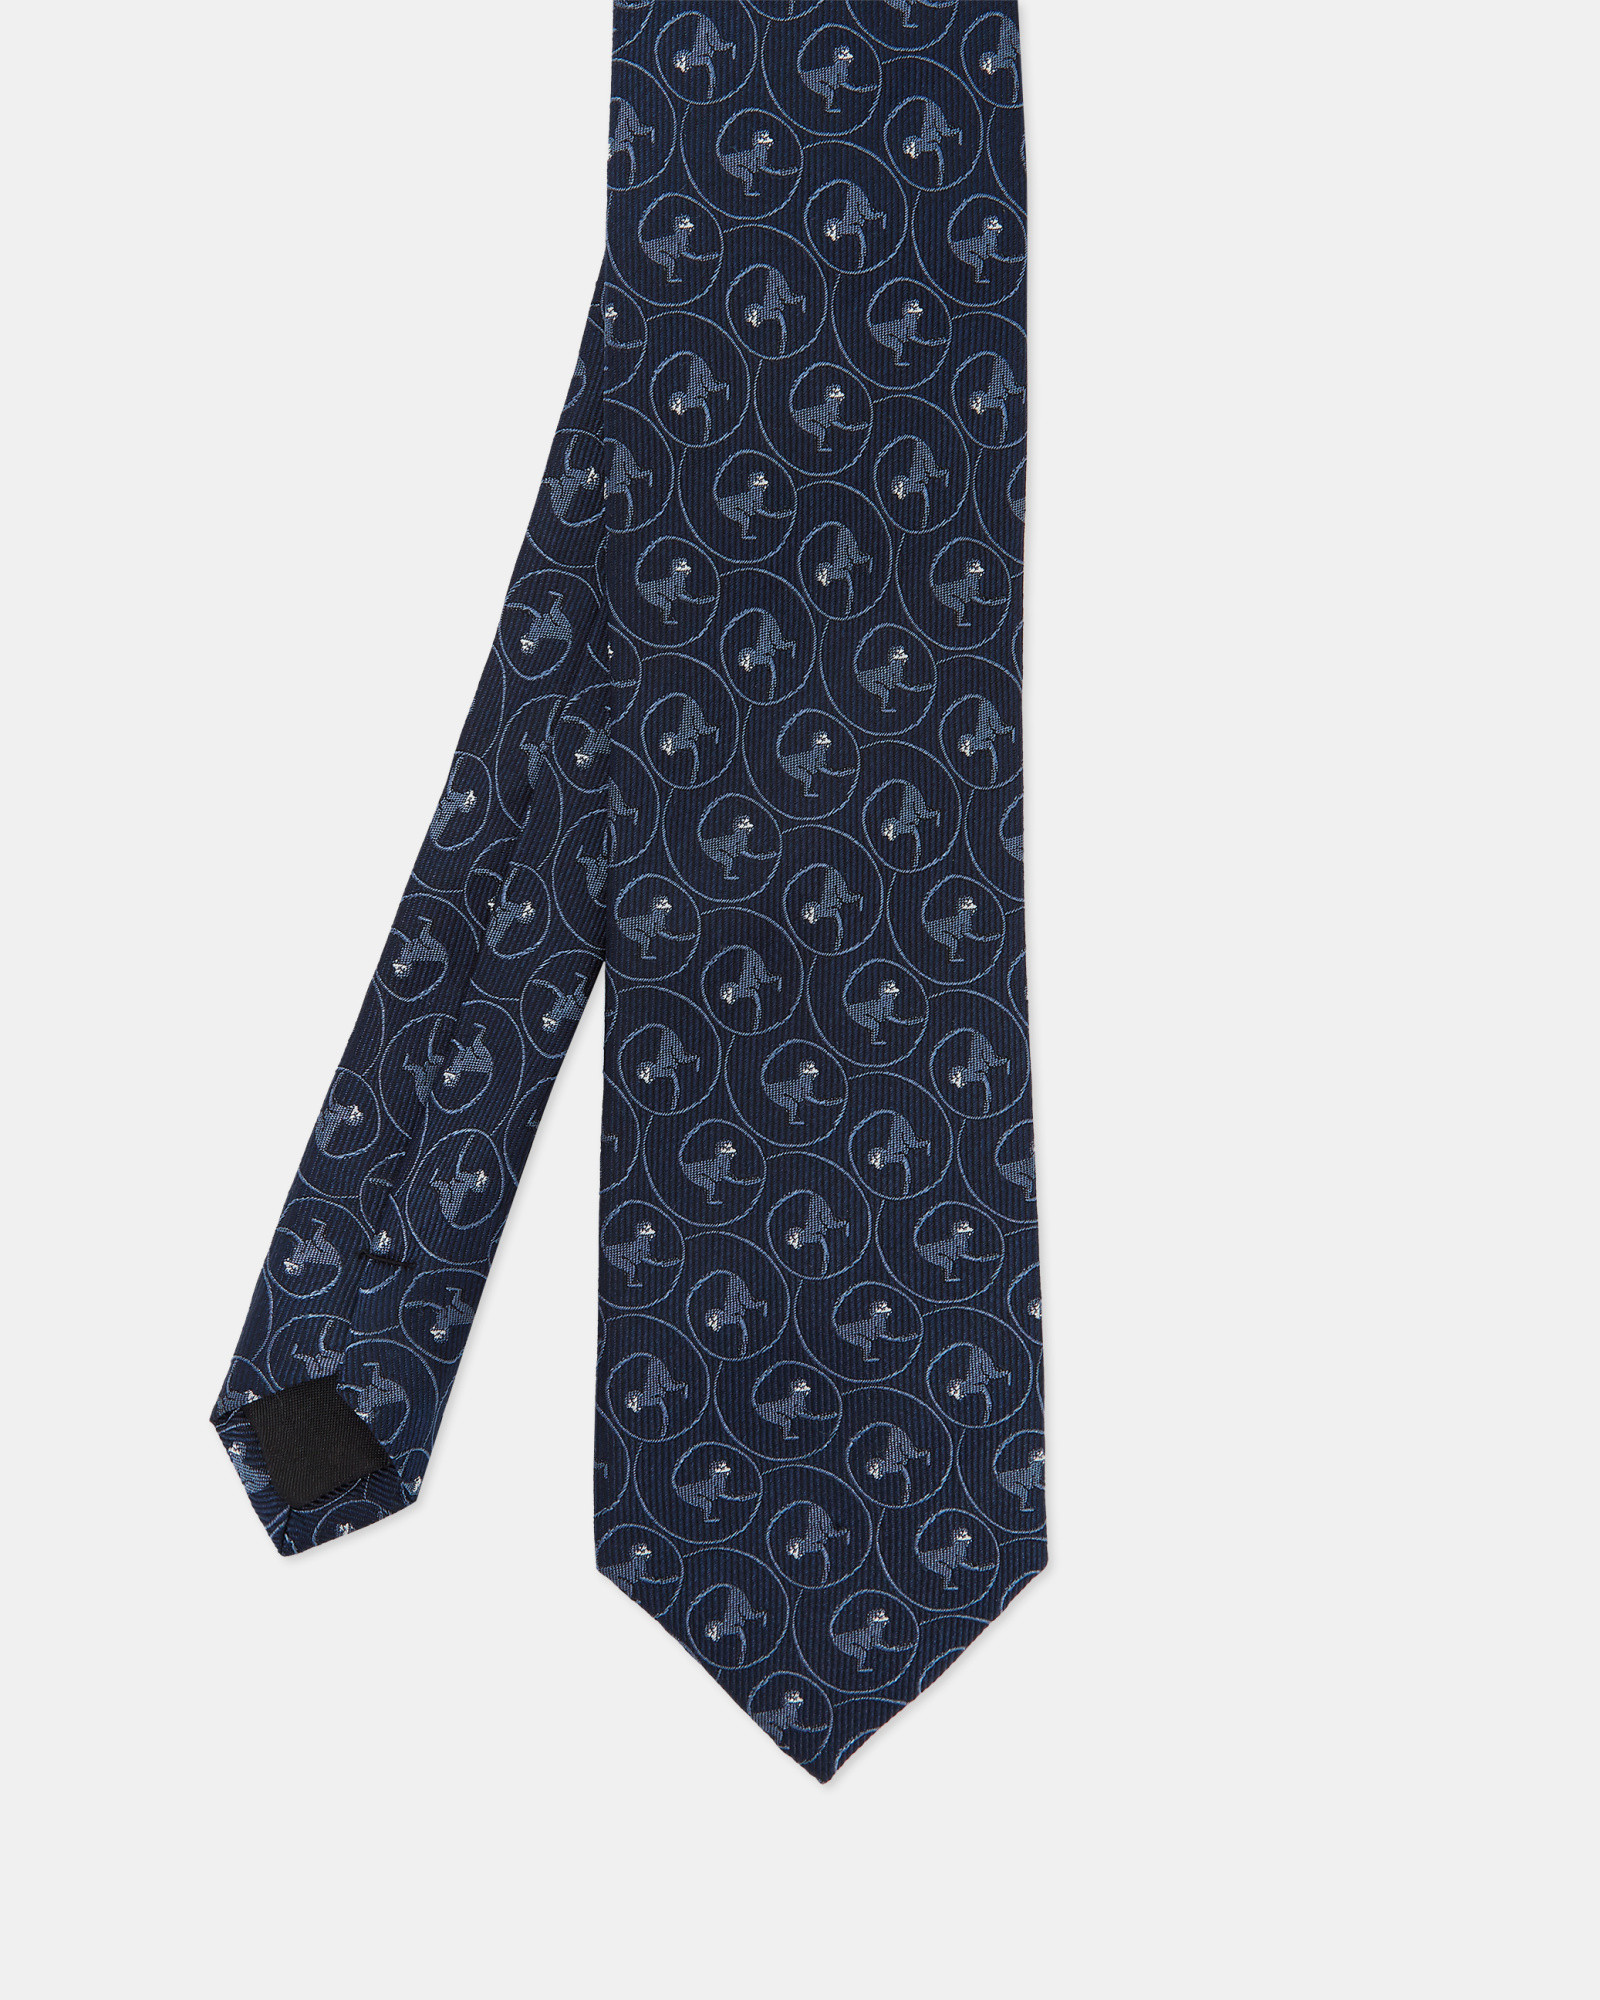 WIRRET Monkey print jacquard silk tie